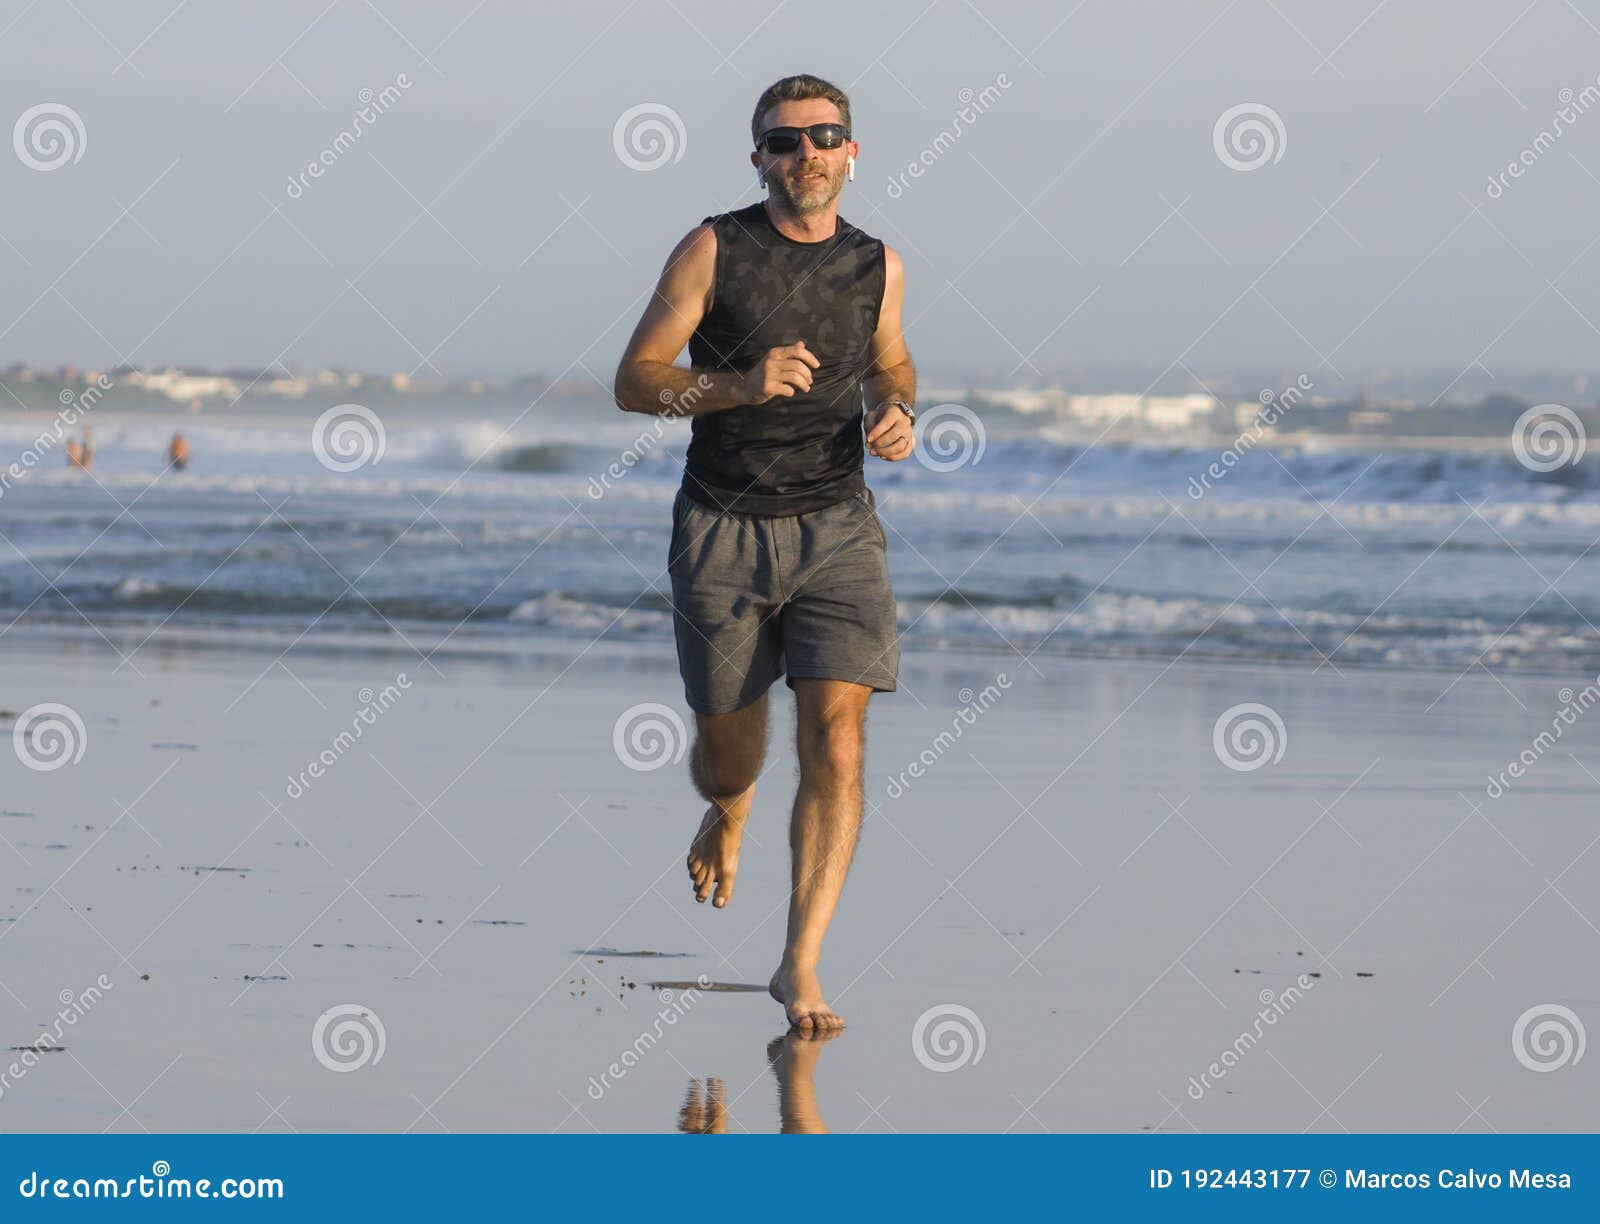 Jogging Verano Entrenamiento Joven Atractivo Y Adecuado Corredor Entrenamiento En Playa Corriendo Descalzo Y Feliz Imagen de archivo - Imagen de gente, activo: